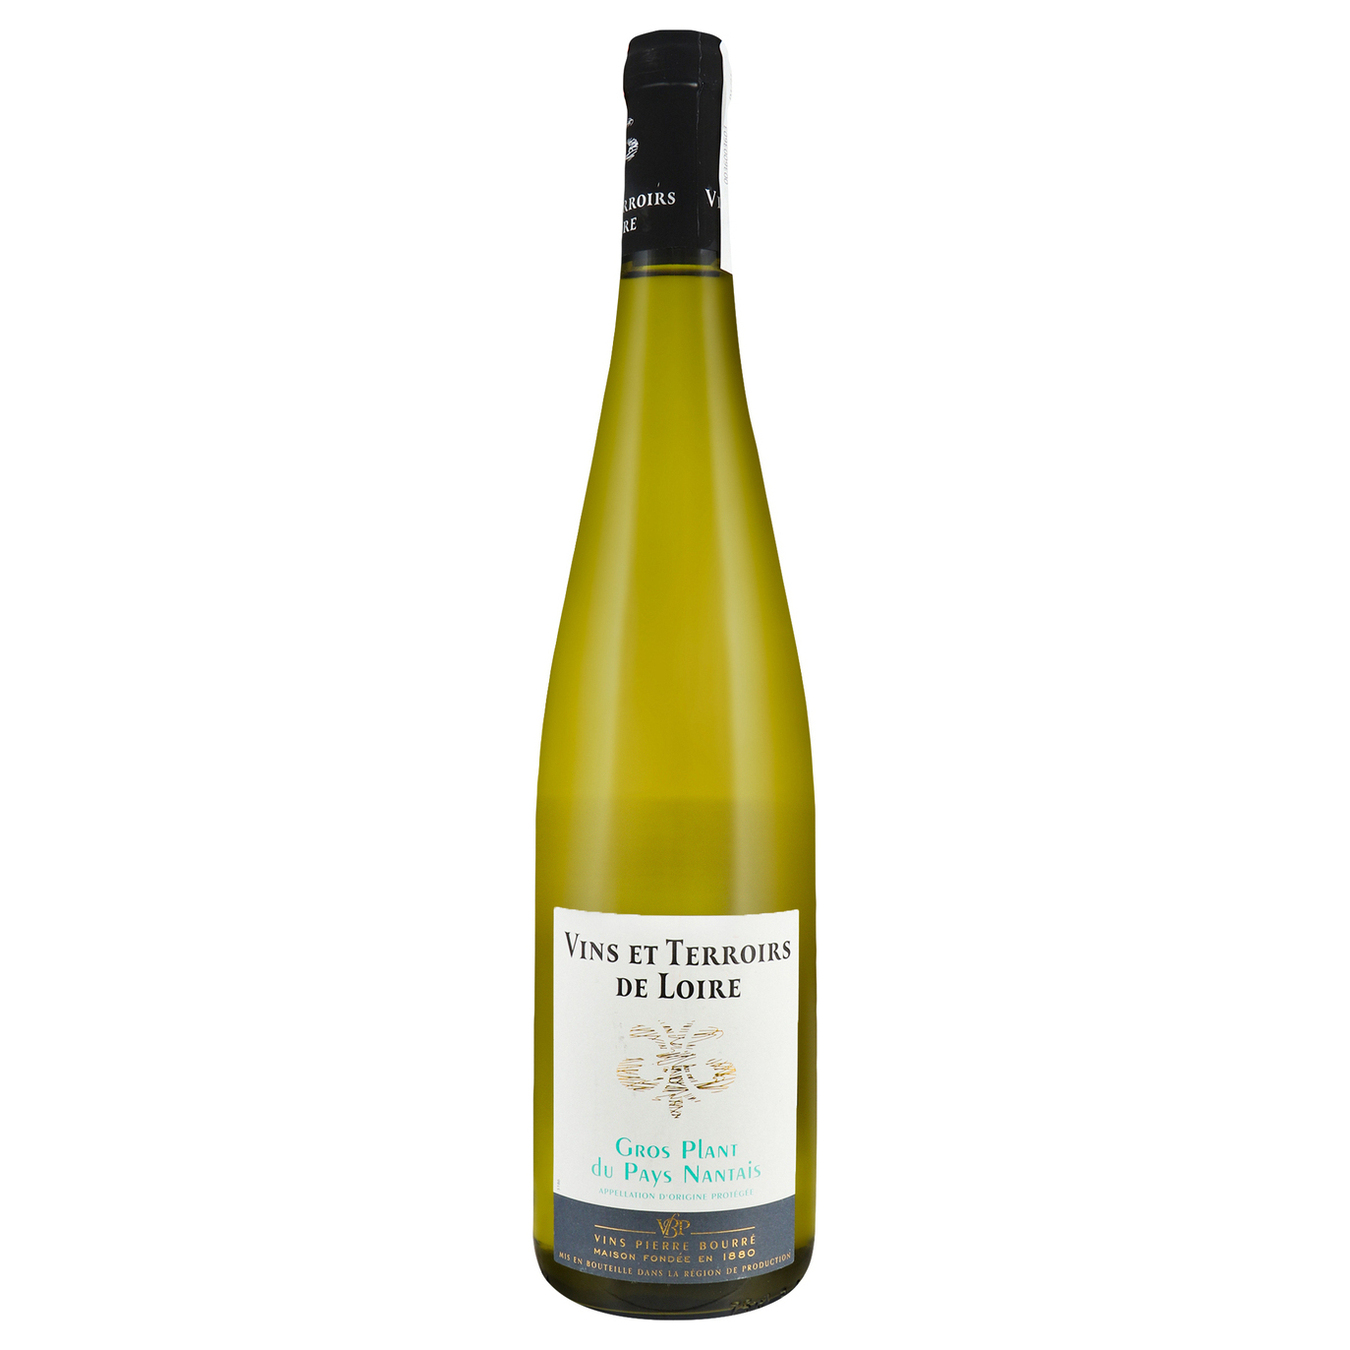 Вино Vins et Terroirs de Loire Gros Plant du Pays Nantais біле сухе 11%0,75л